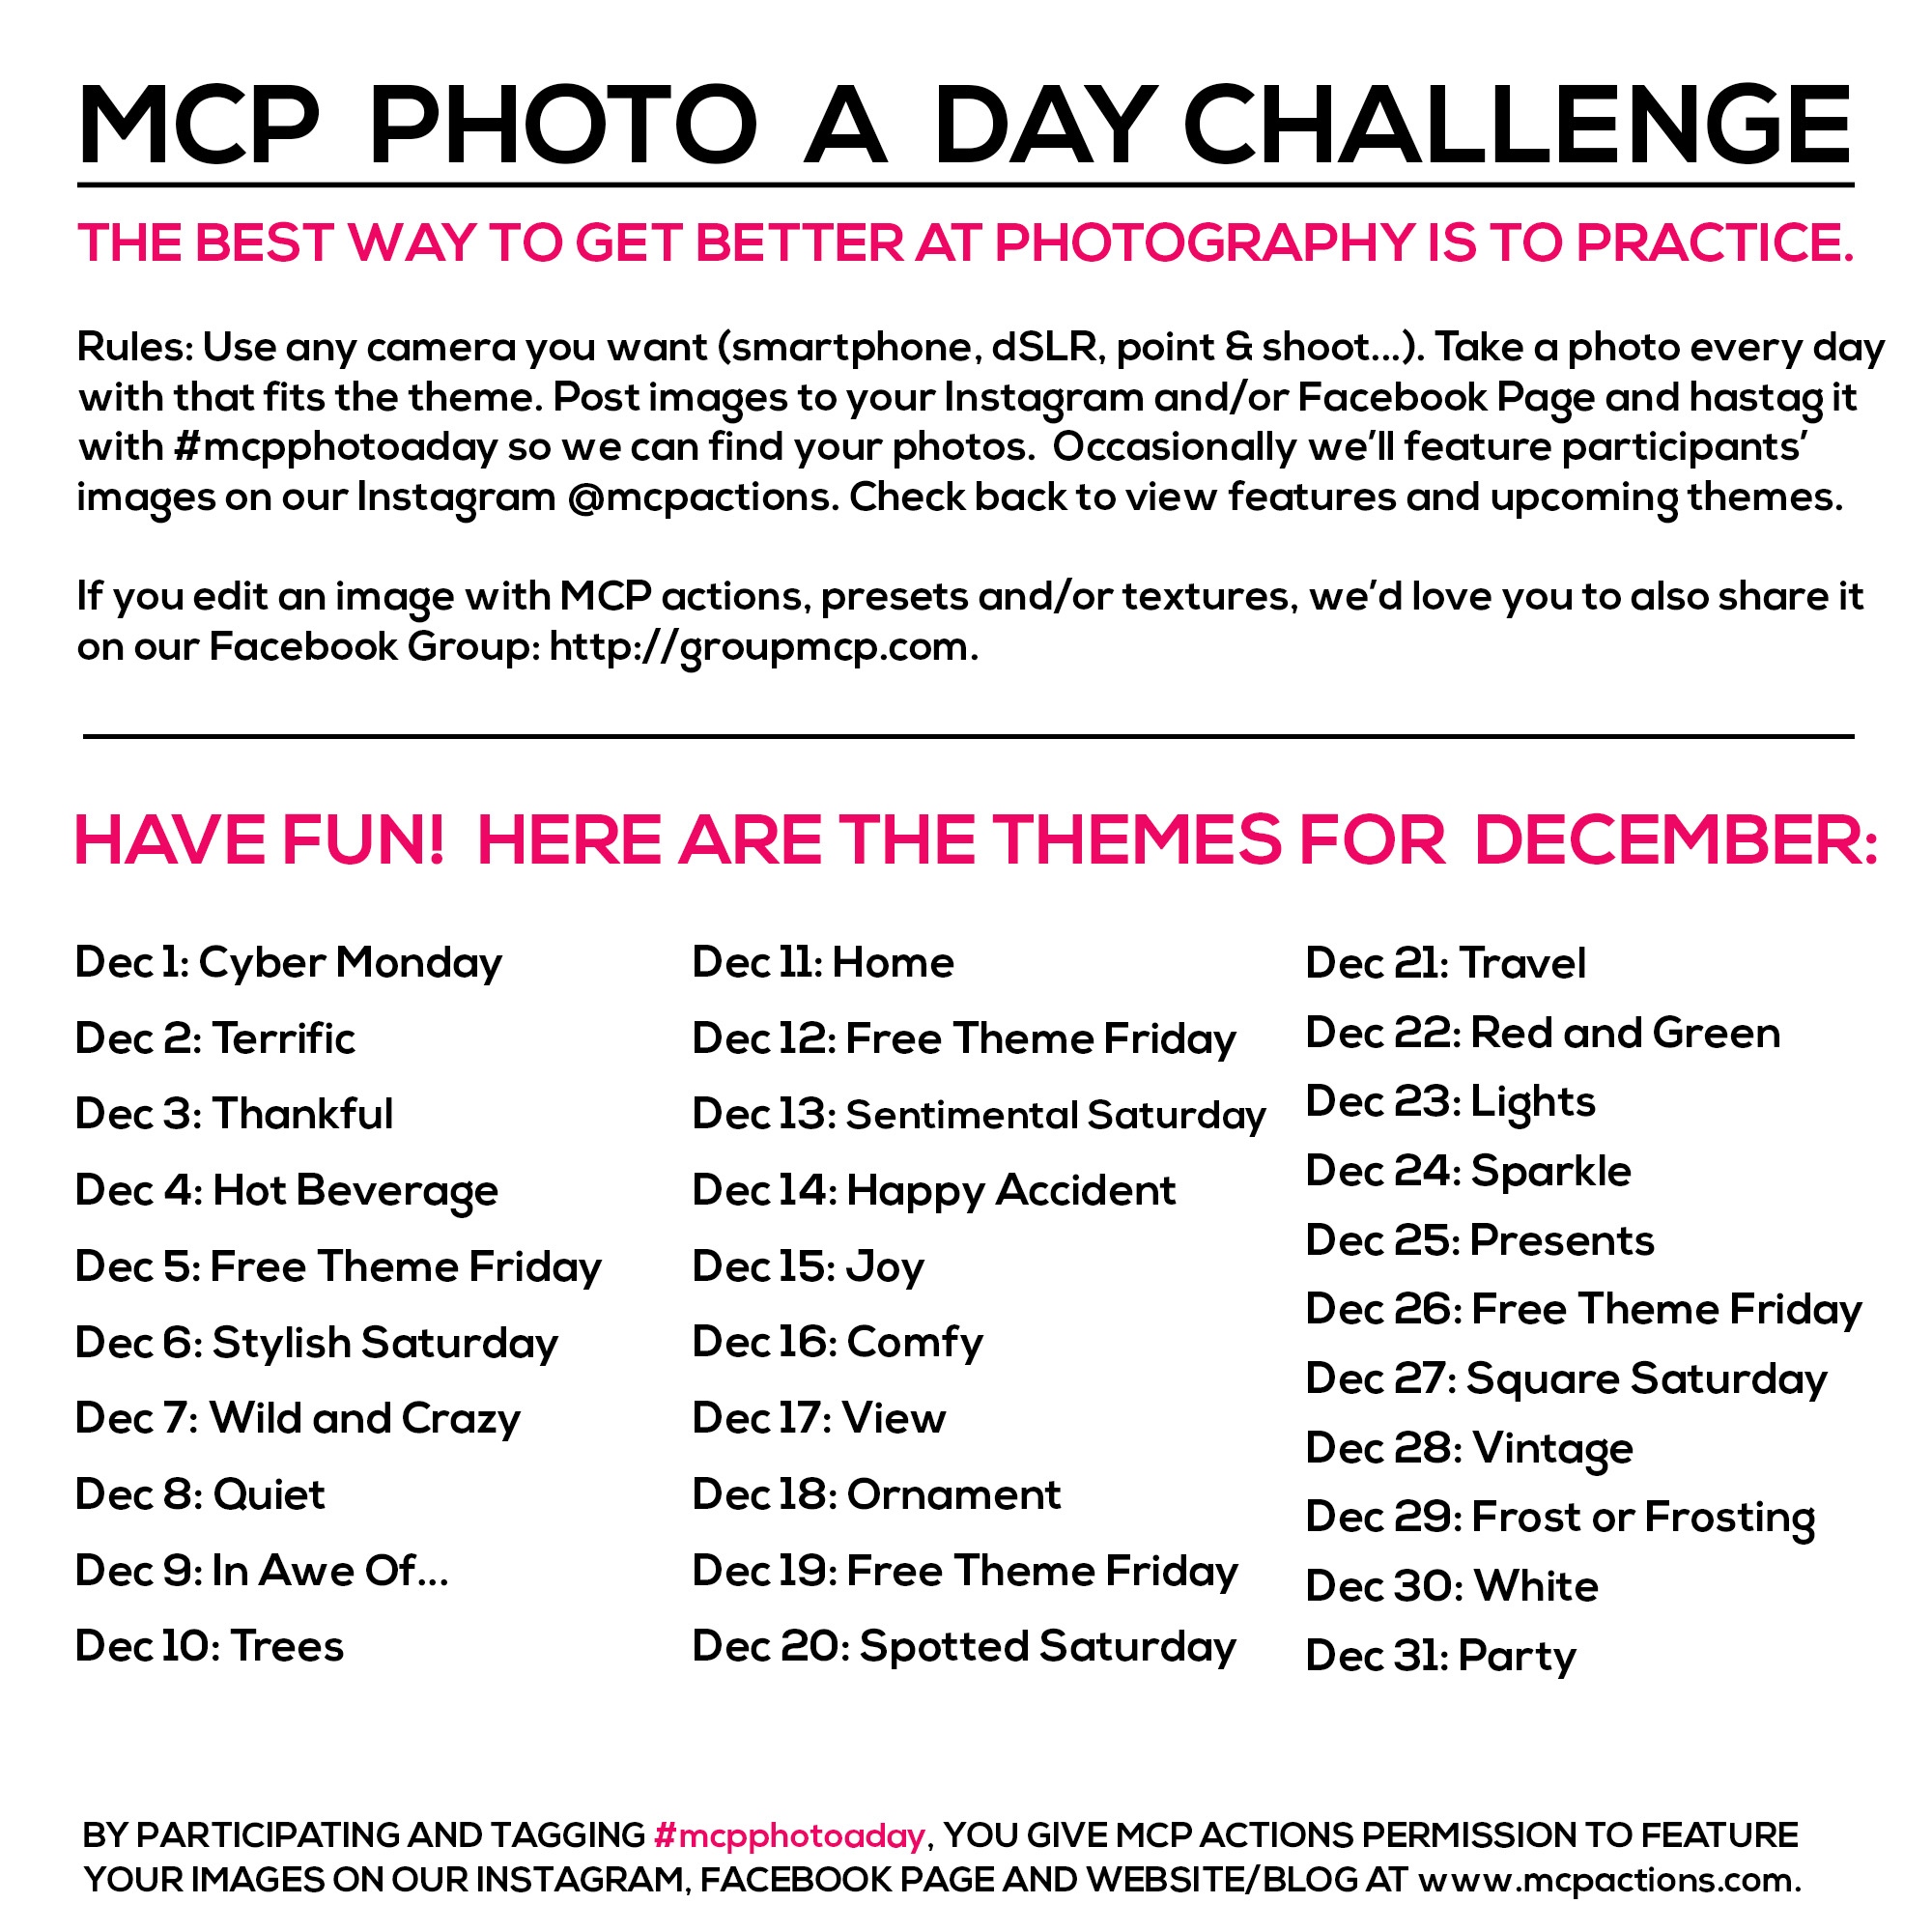 mcpphotoaday-decembrie MCP Fotografie O zi Provocare: decembrie Teme Activități Alocări Acțiuni MCP Proiecte